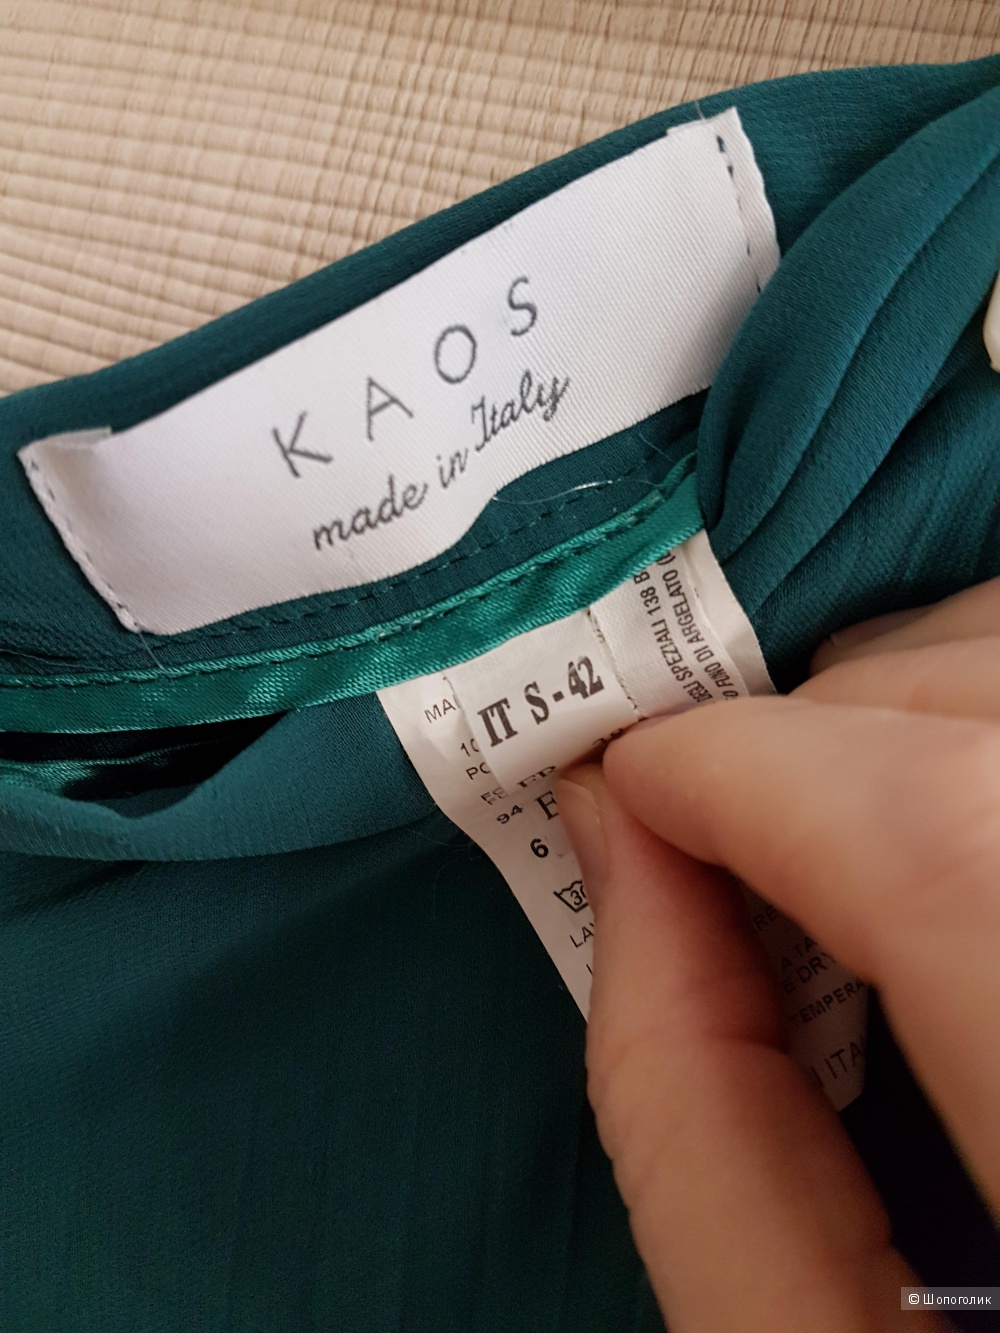 Плиссированная юбка-брюки KAOS 44 размер